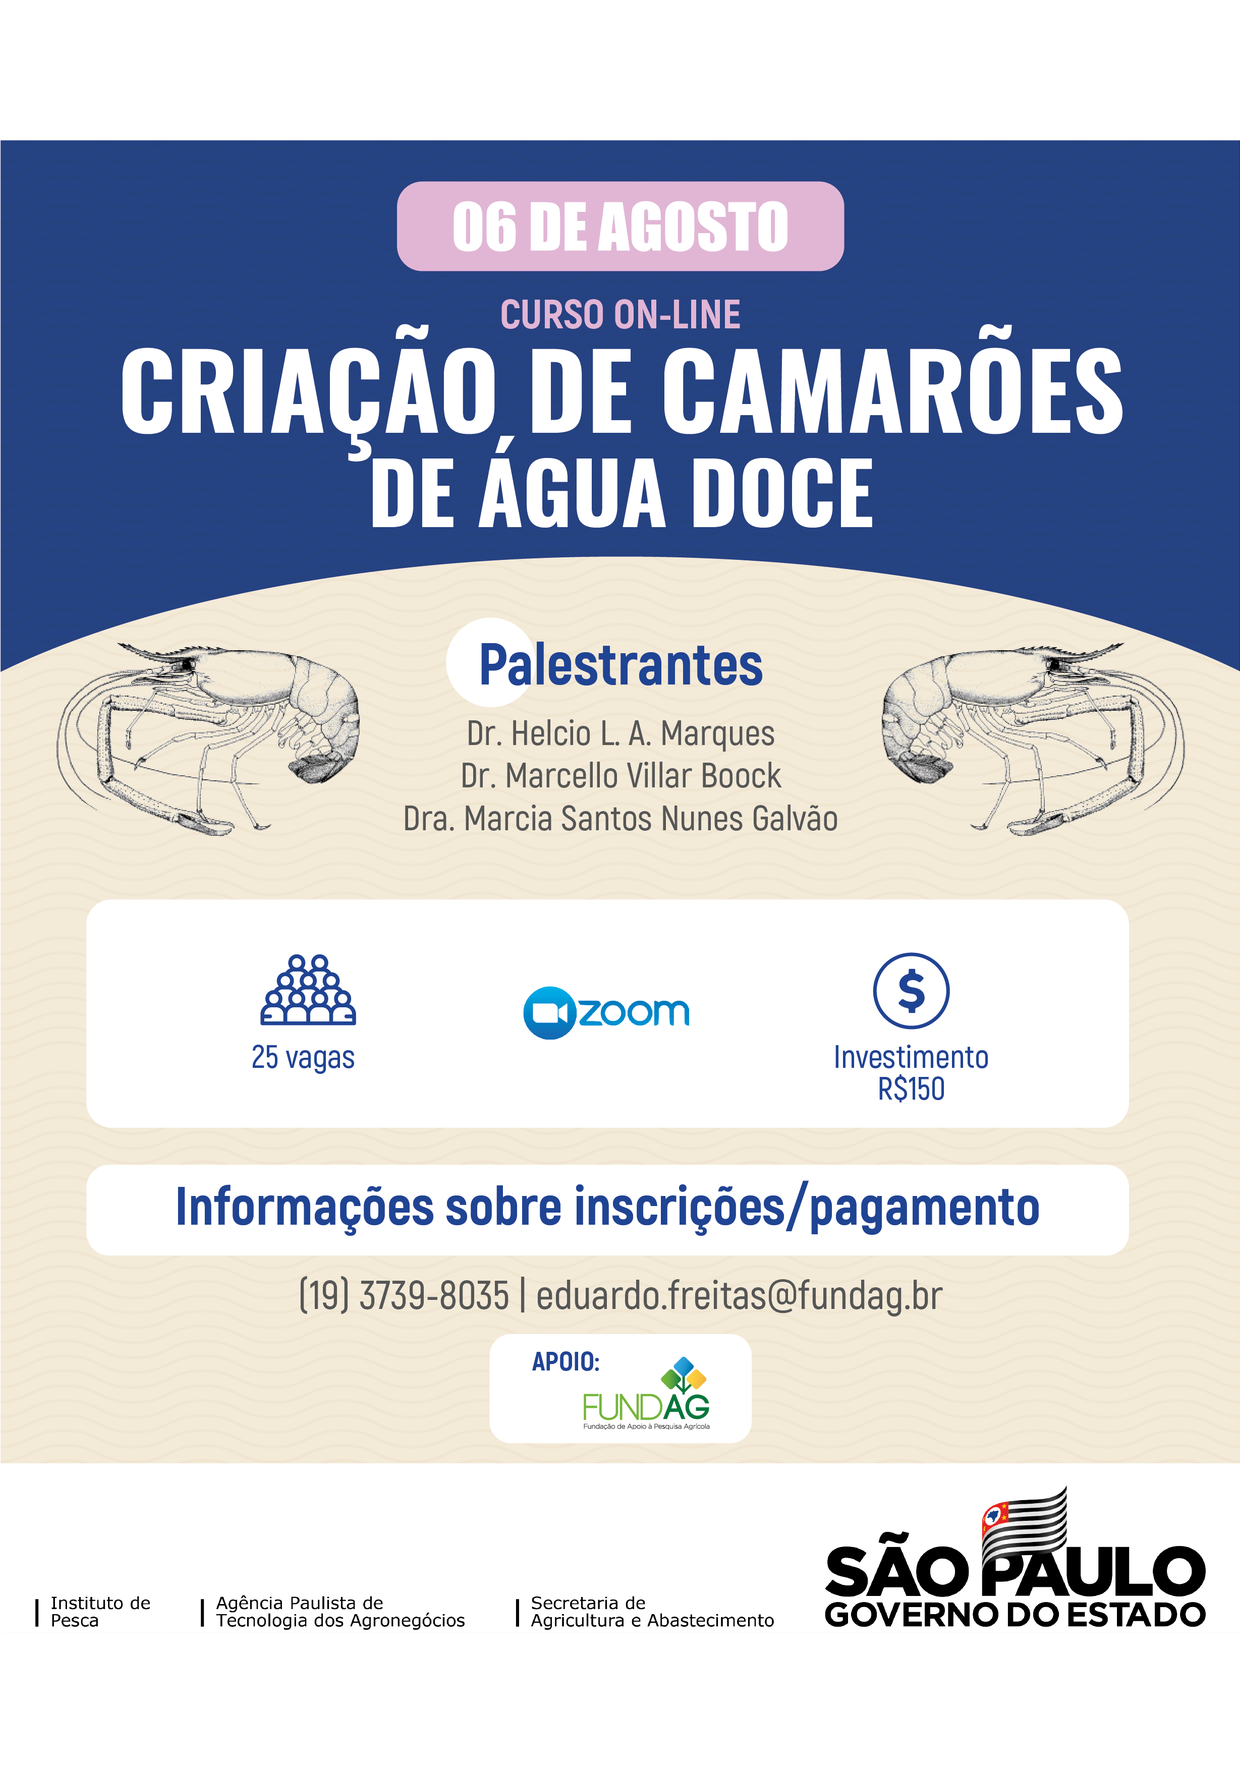 CURSO ONLINE - CRIAÇÃO DE CAMARÕES DE ÁGUA DOCE